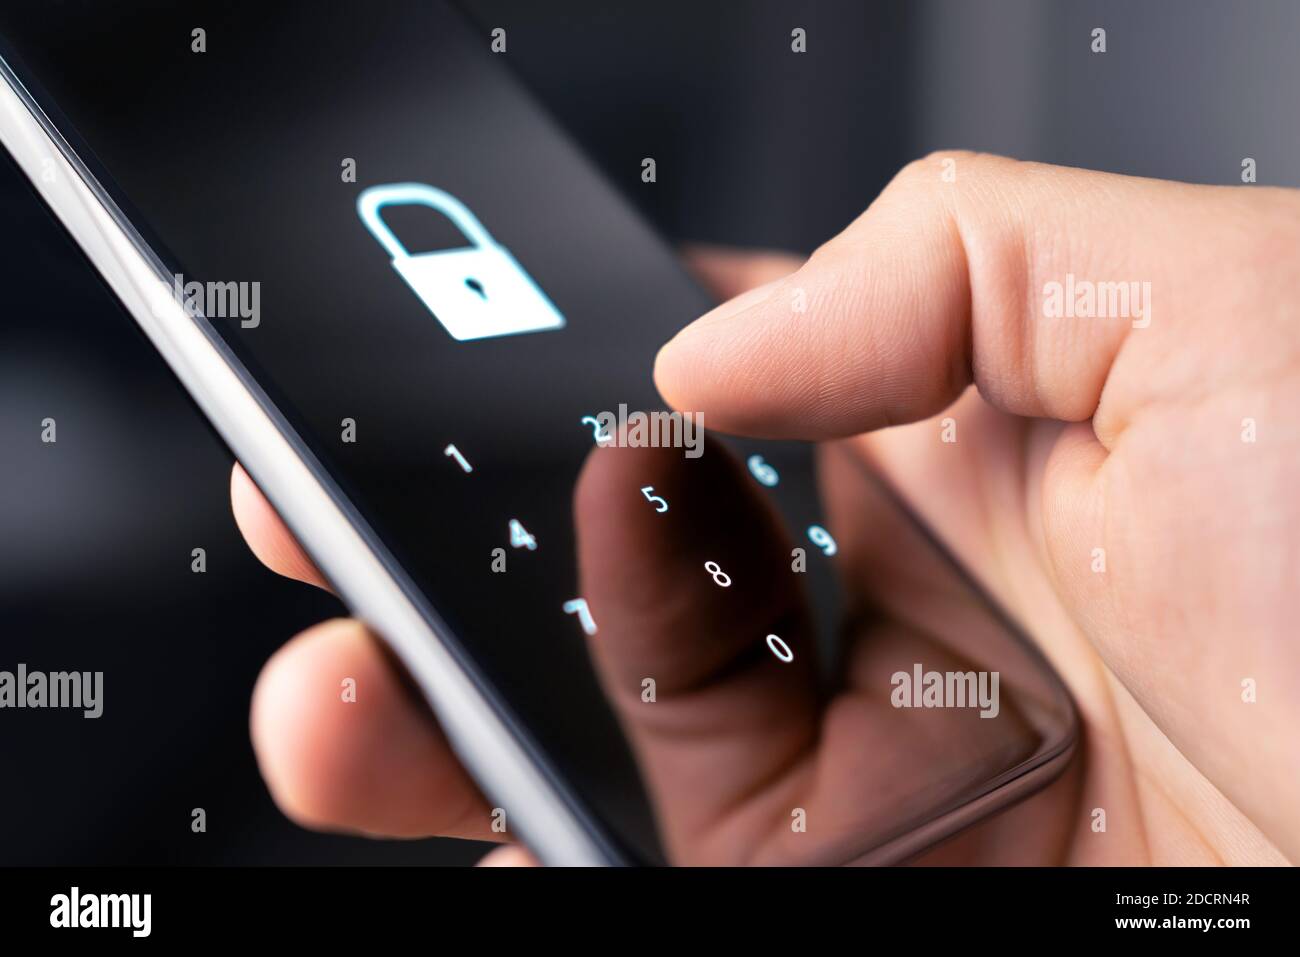 Code de sécurité, mot de passe ou verrou du téléphone mobile pour la confidentialité et la vérification personnelles en ligne. 2FA (authentification à deux facteurs) et code d'accès pour les données. Banque D'Images